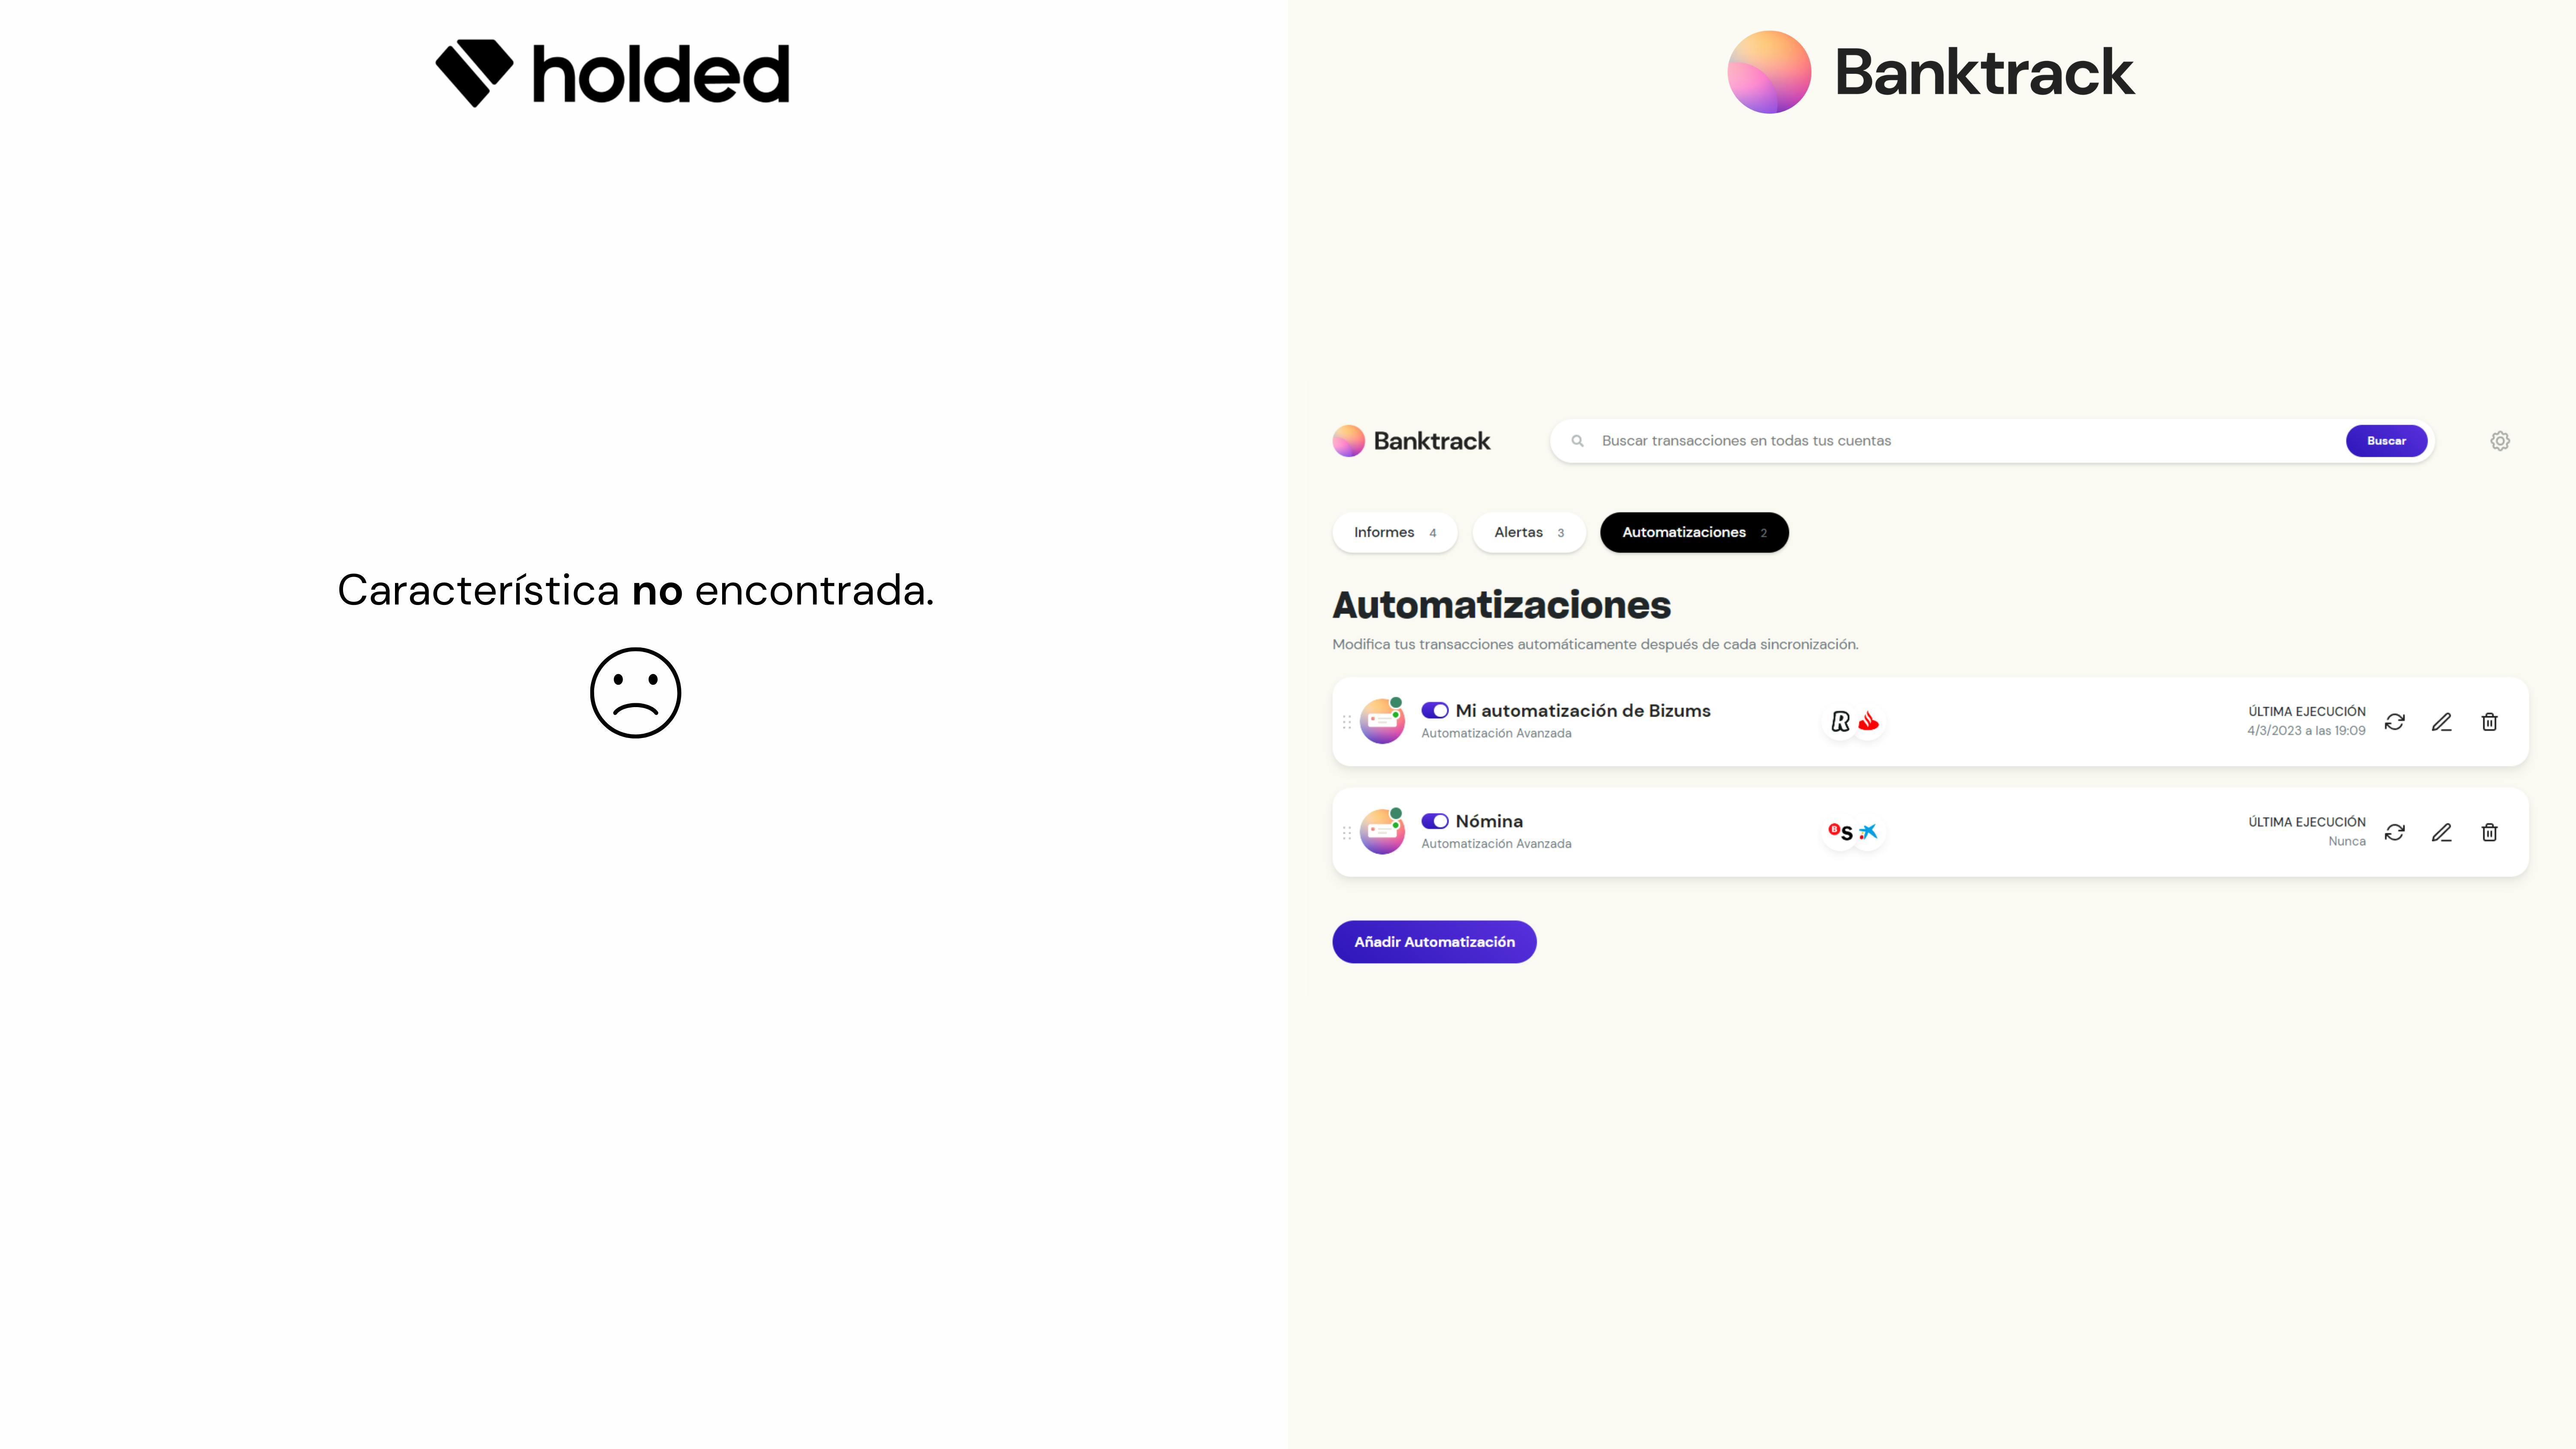 Capturas de pantalla en las correspondientes herramientas de gestión de finanzas para empresas. A la izquierda Holded y a la derecha su alternativa Banktrack.